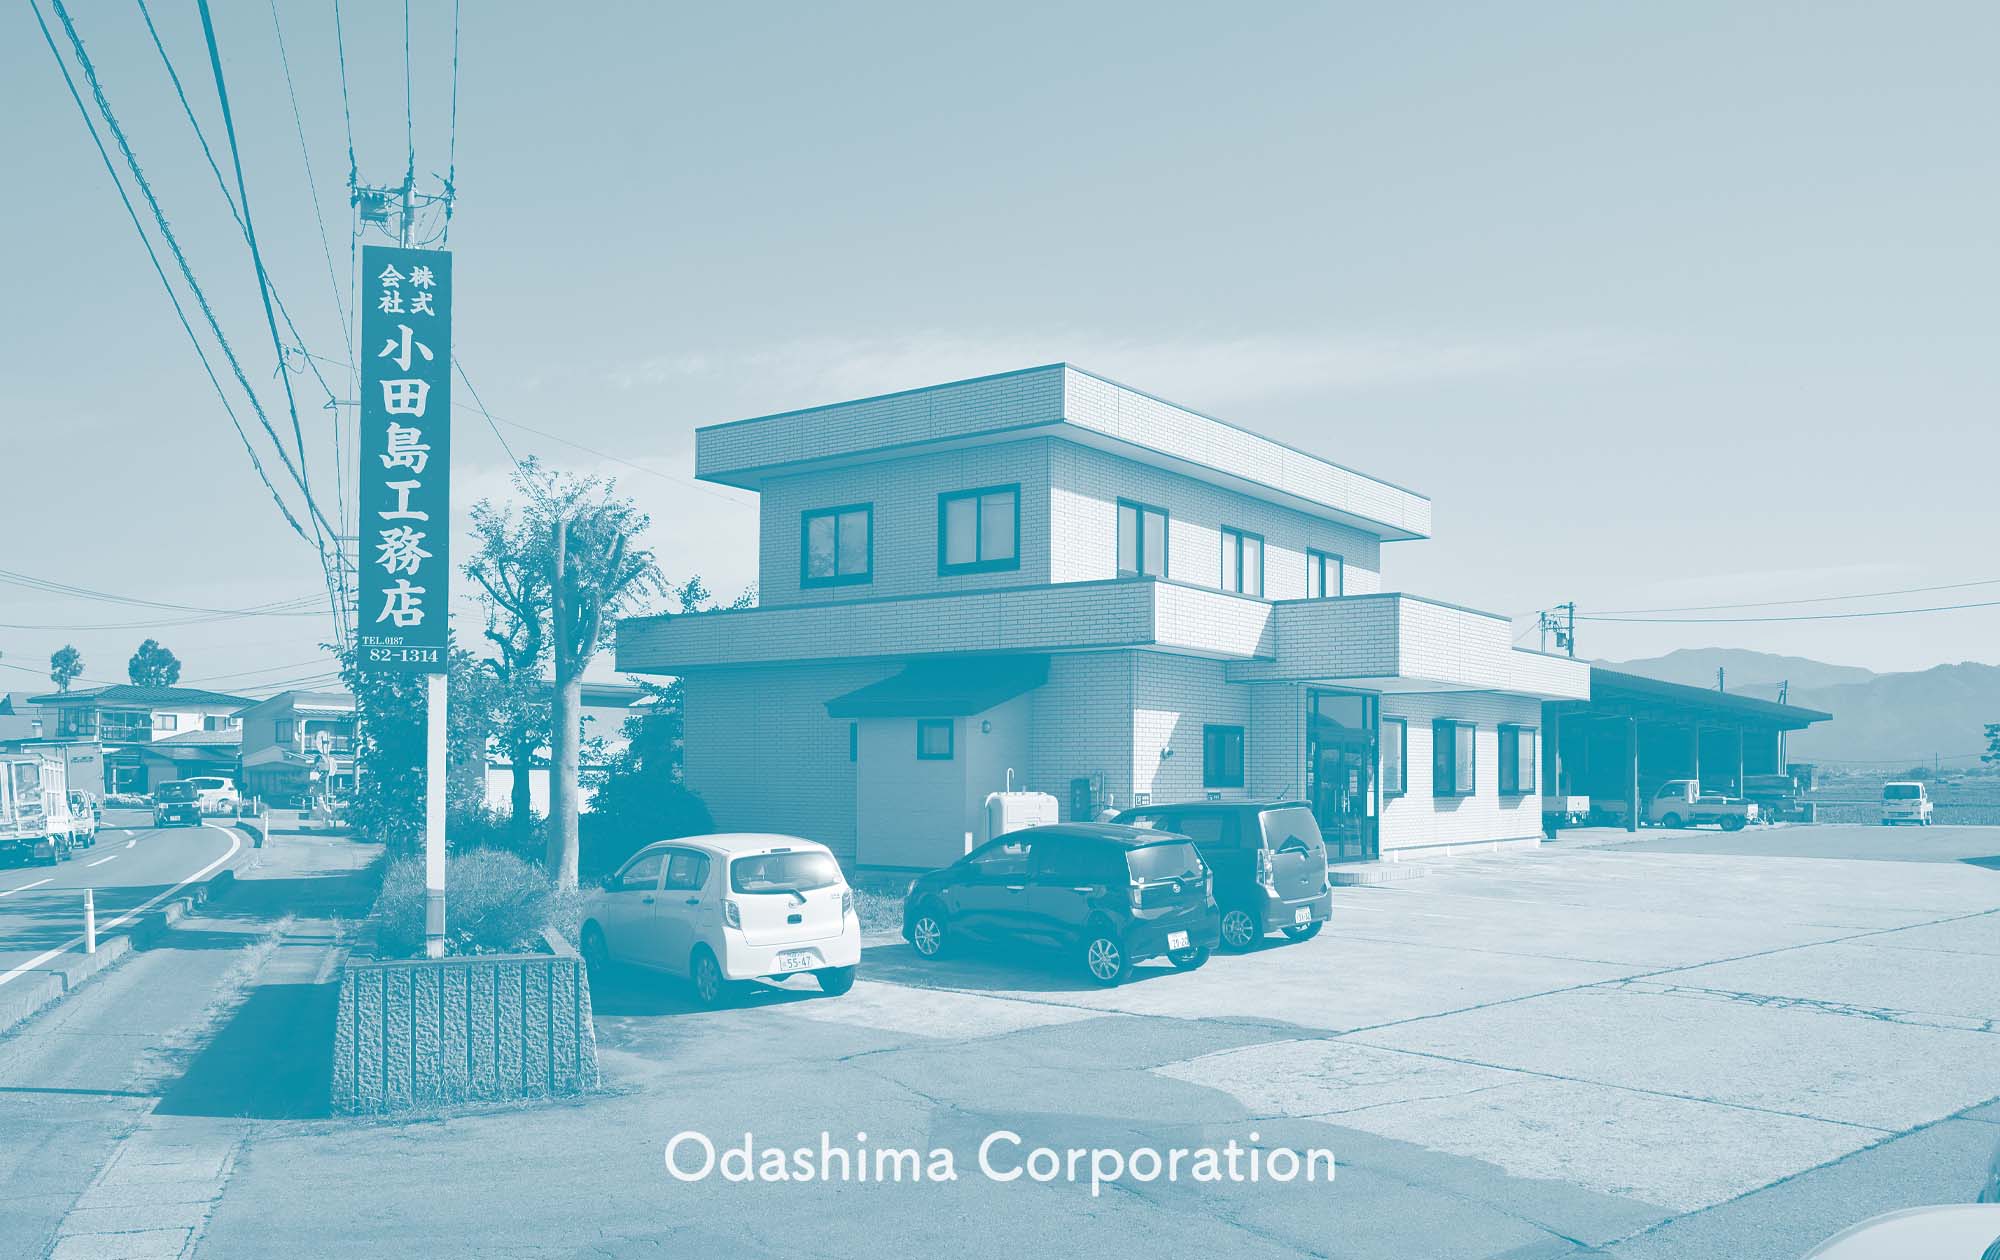 Odashima Corporation